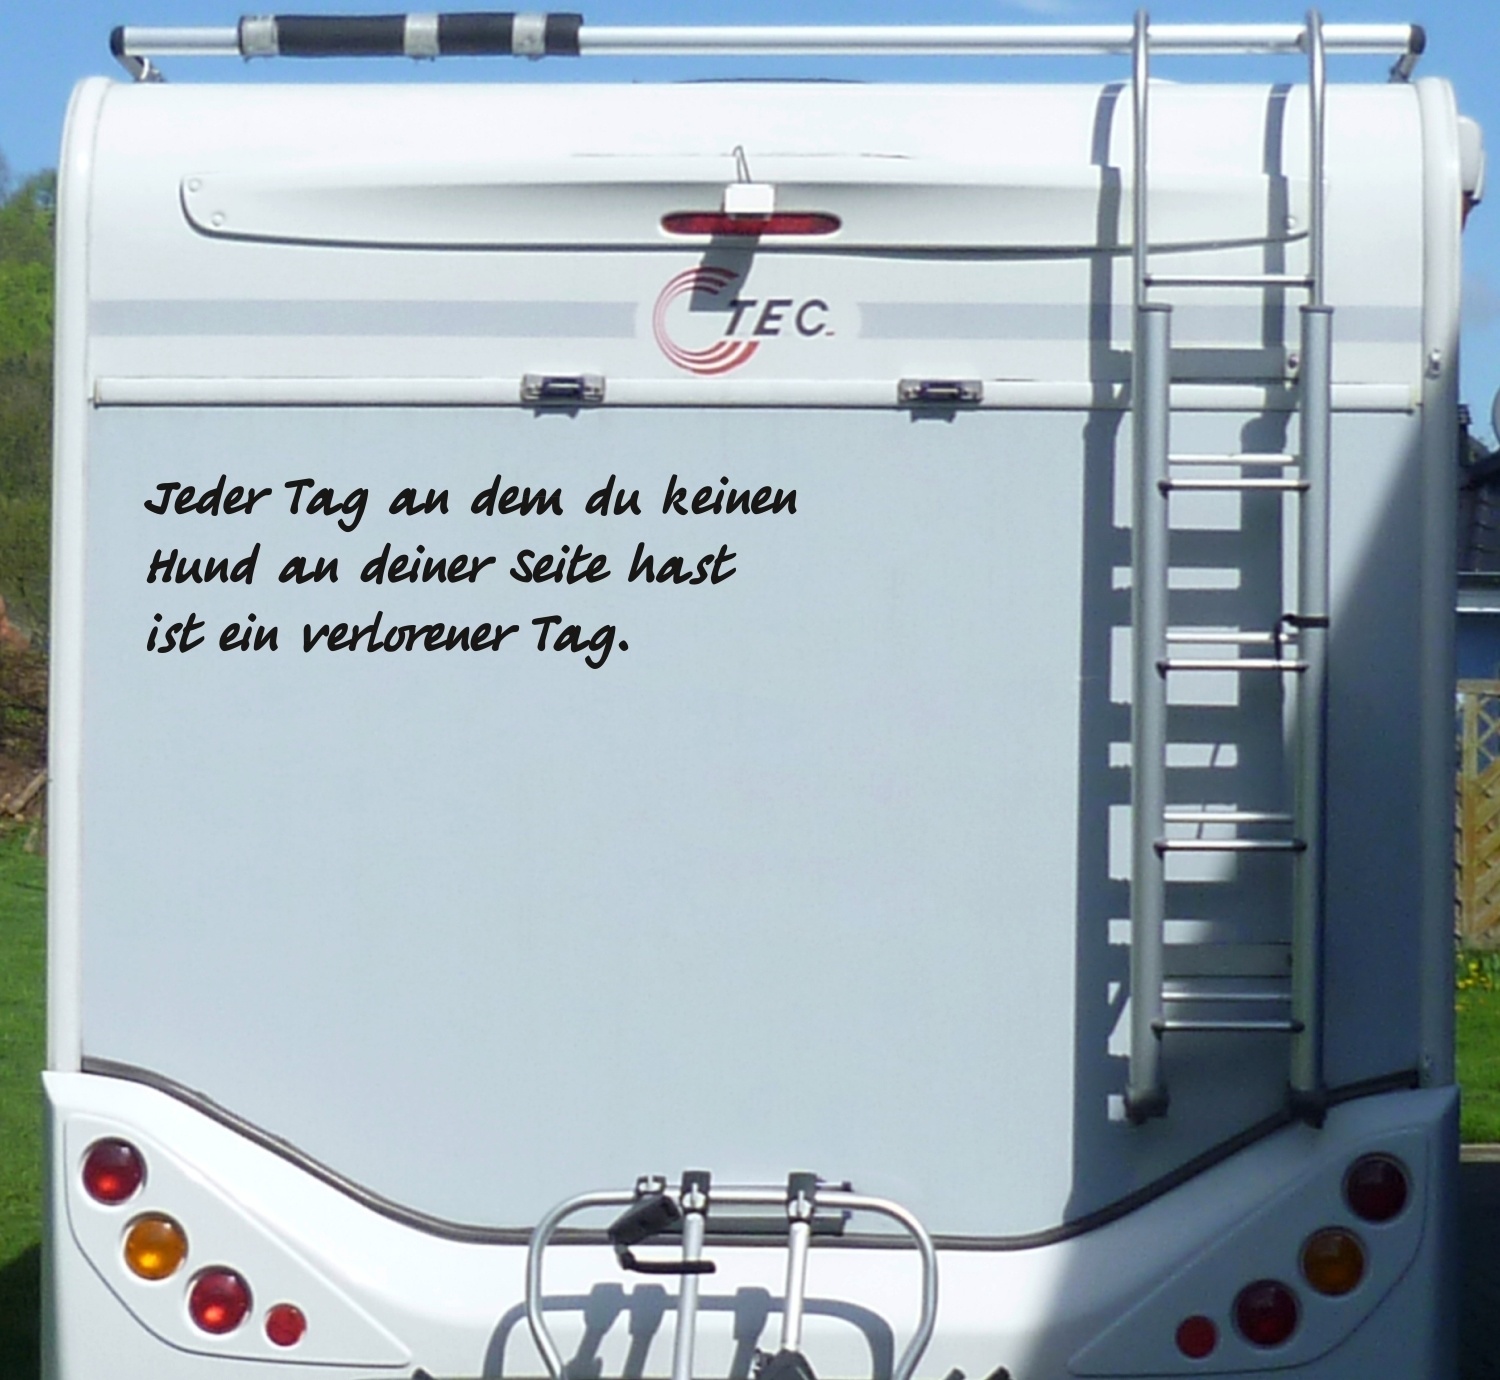 https://schildereinkauf.de/media/image/product/21916/lg/aufkleber-hund-an-deiner-seite-wohnmobil-wohnwagen-camping-camper-caravan-auto.jpg